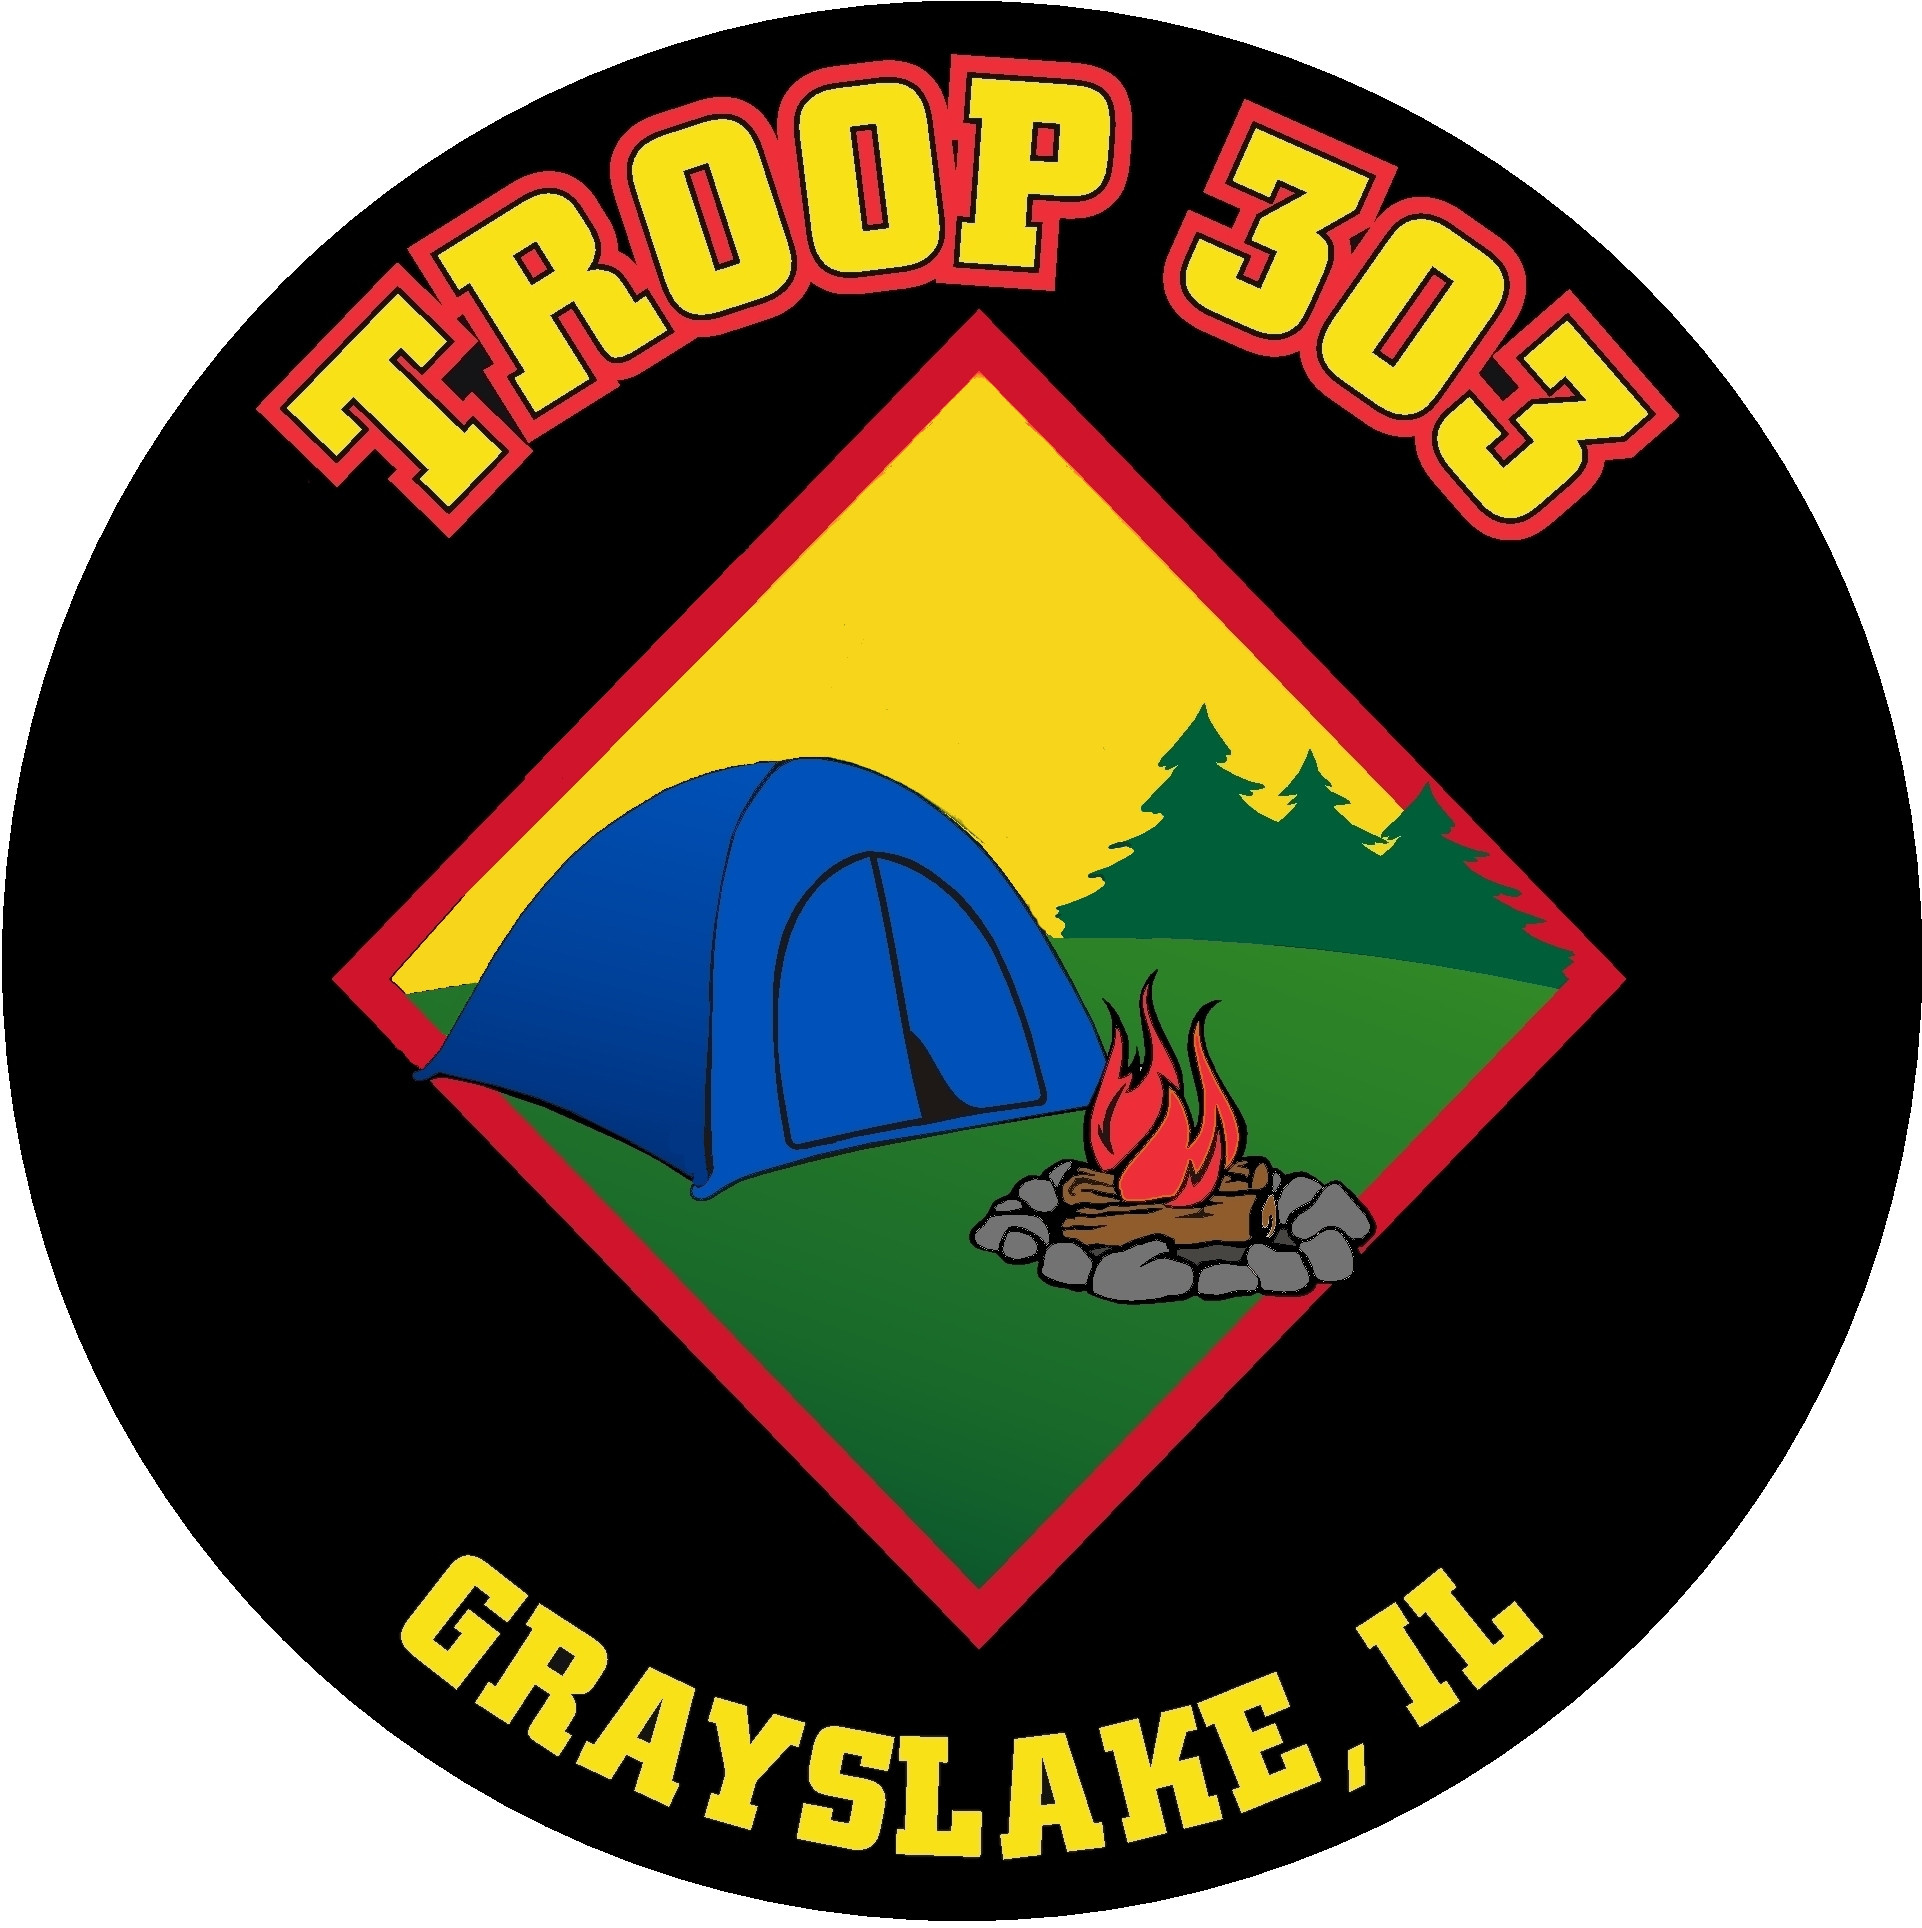 https://troop303.crowdnpo.com/images/T303_Web_Site_Logo_160.jpg